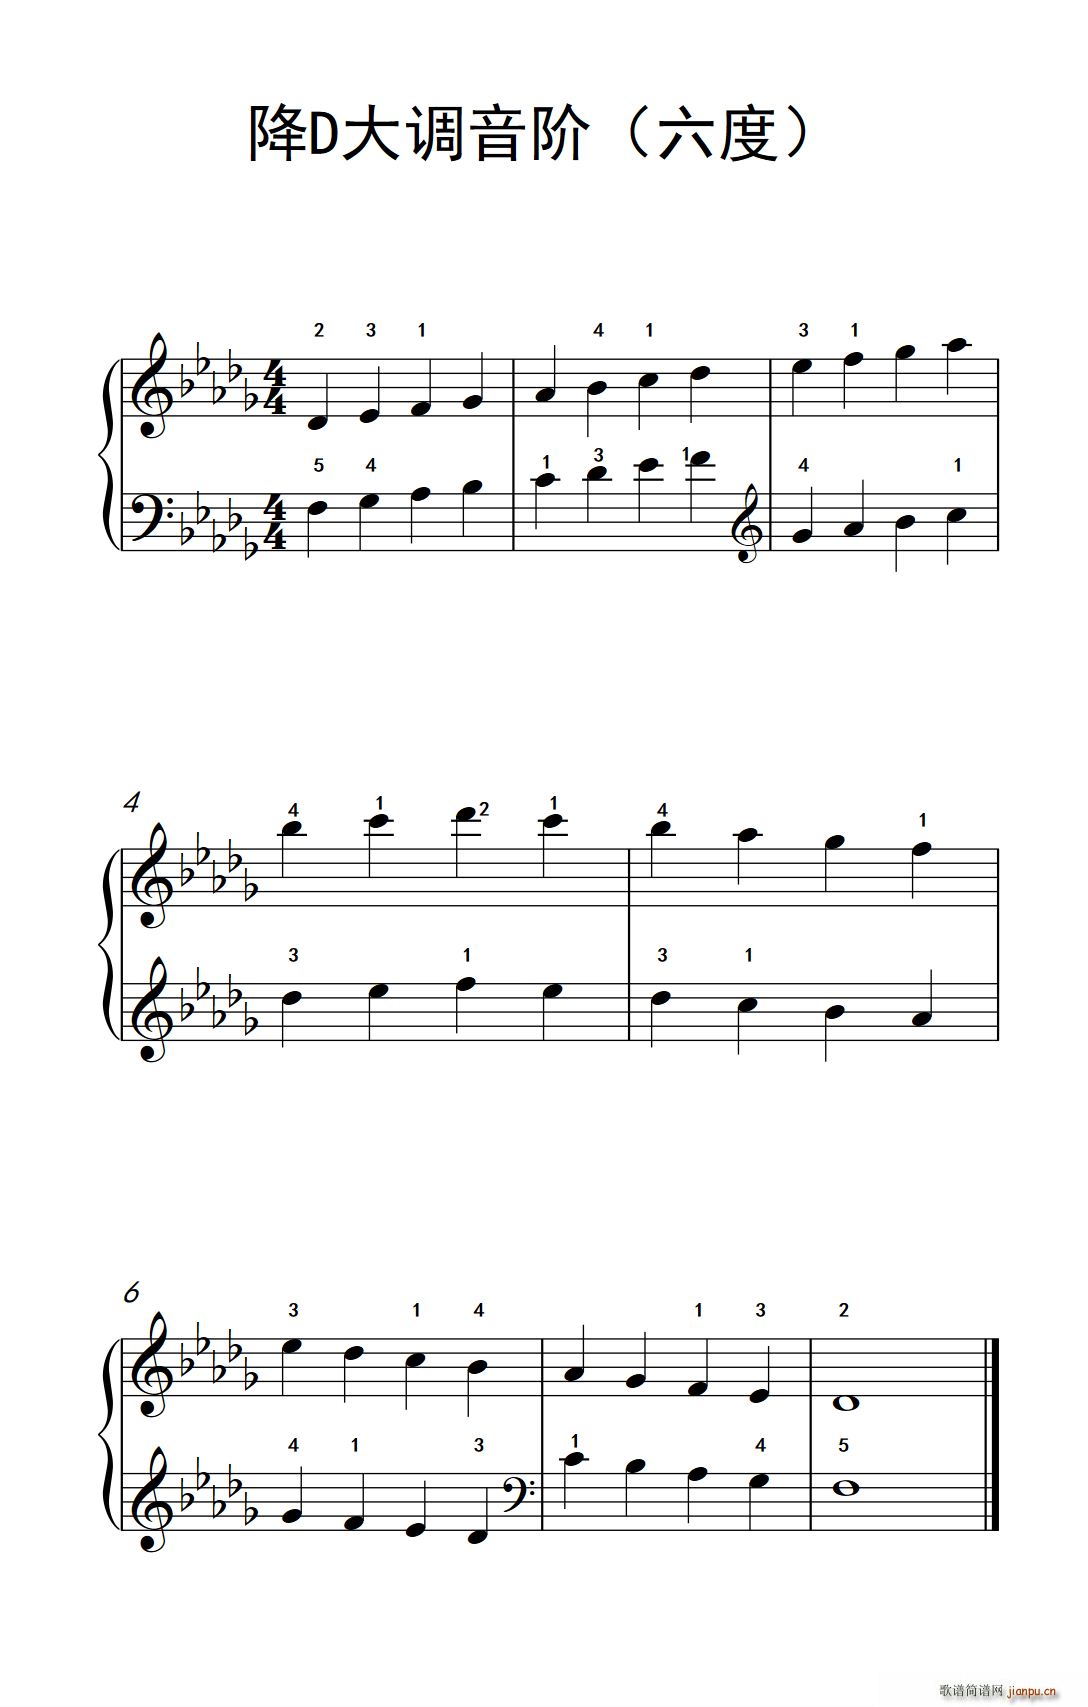 降d大调音阶(六度)(孩子们的钢琴音阶,和弦与琶音 2)图片